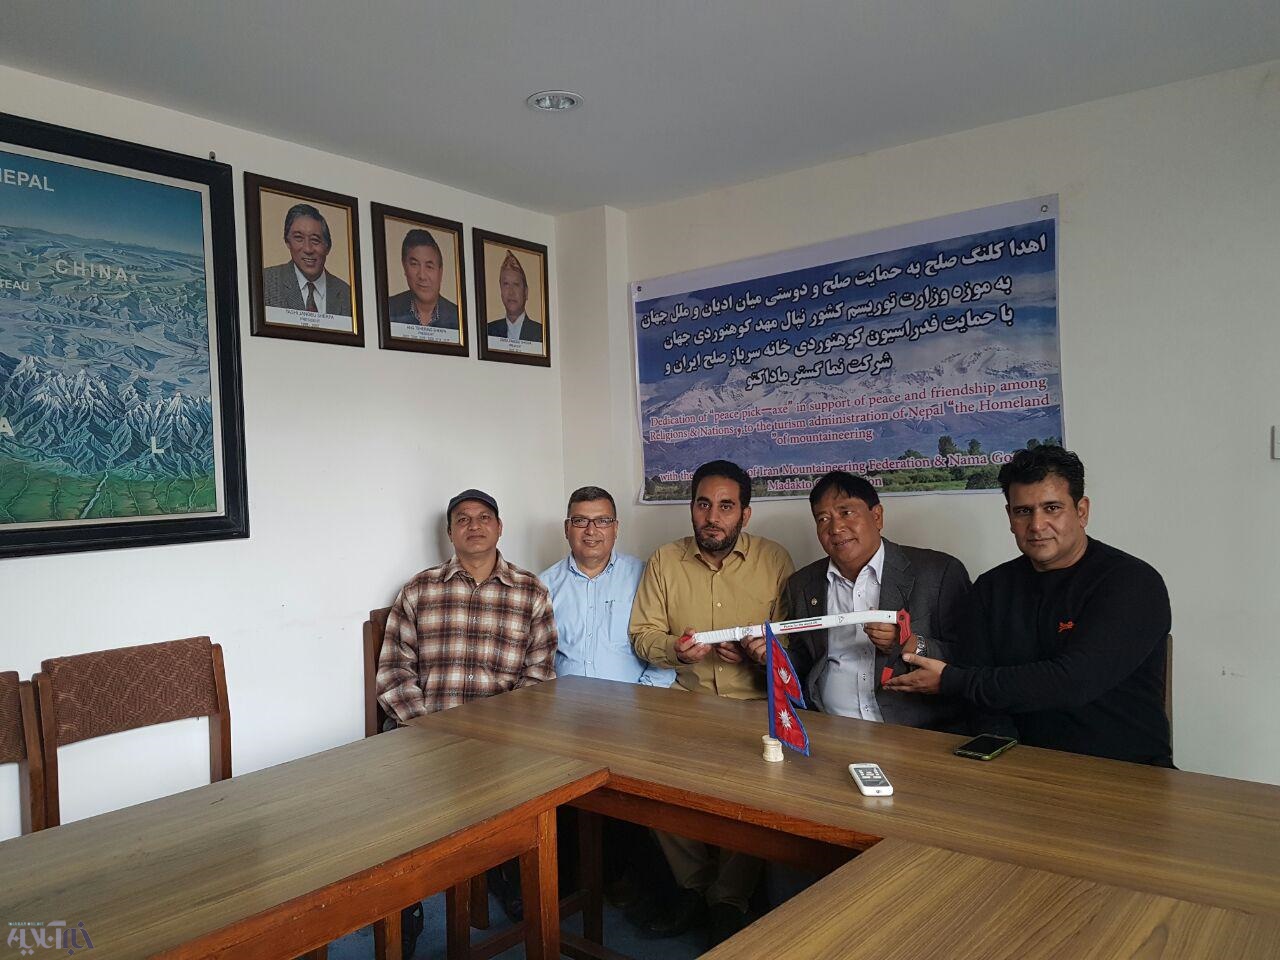  اهدا کلنگ سفید به فدراسیون کوهنوردی نپال با حضور کوهنورد لرستانی